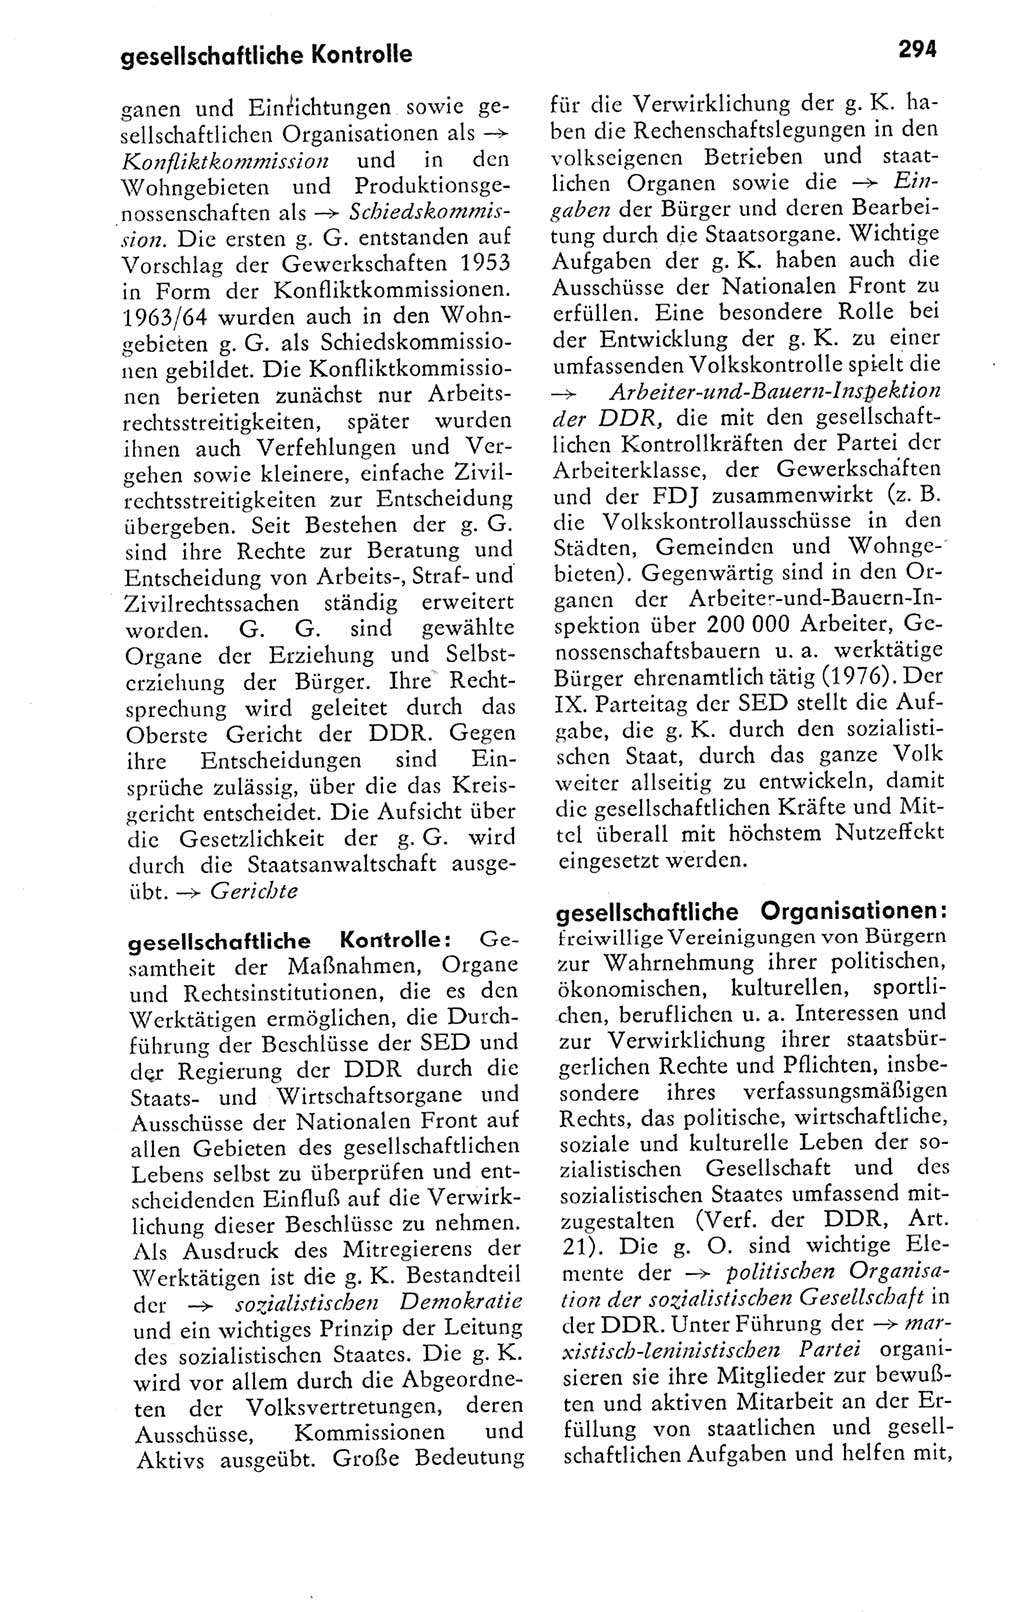 Kleines politisches Wörterbuch [Deutsche Demokratische Republik (DDR)] 1978, Seite 294 (Kl. pol. Wb. DDR 1978, S. 294)